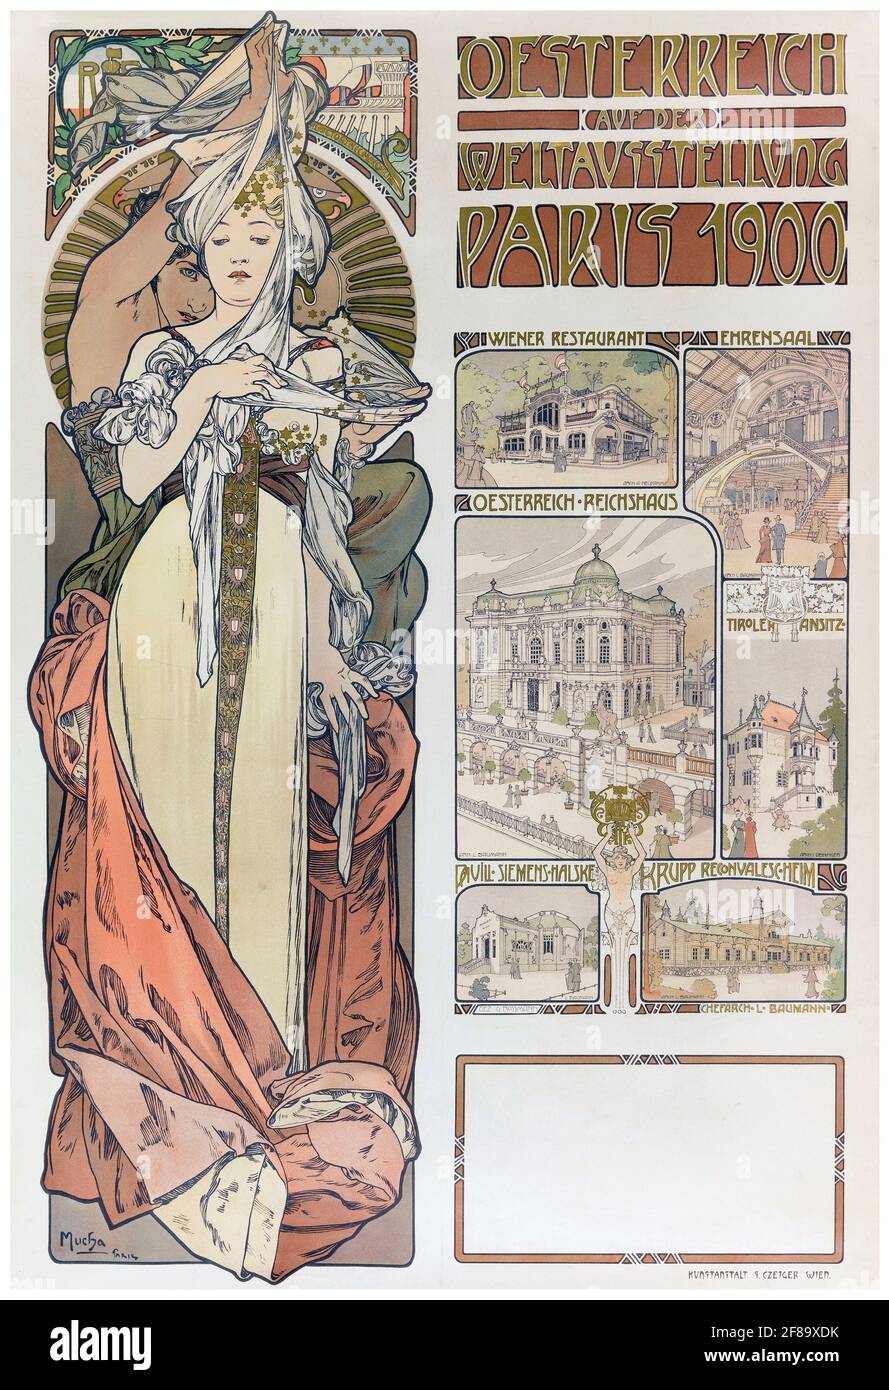 CARTEL – Plakat Mucha Osterreich Paris 1900 – Art Nouveau de Alphonse Mucha. Cartel de la Feria Mundial. Foto de stock